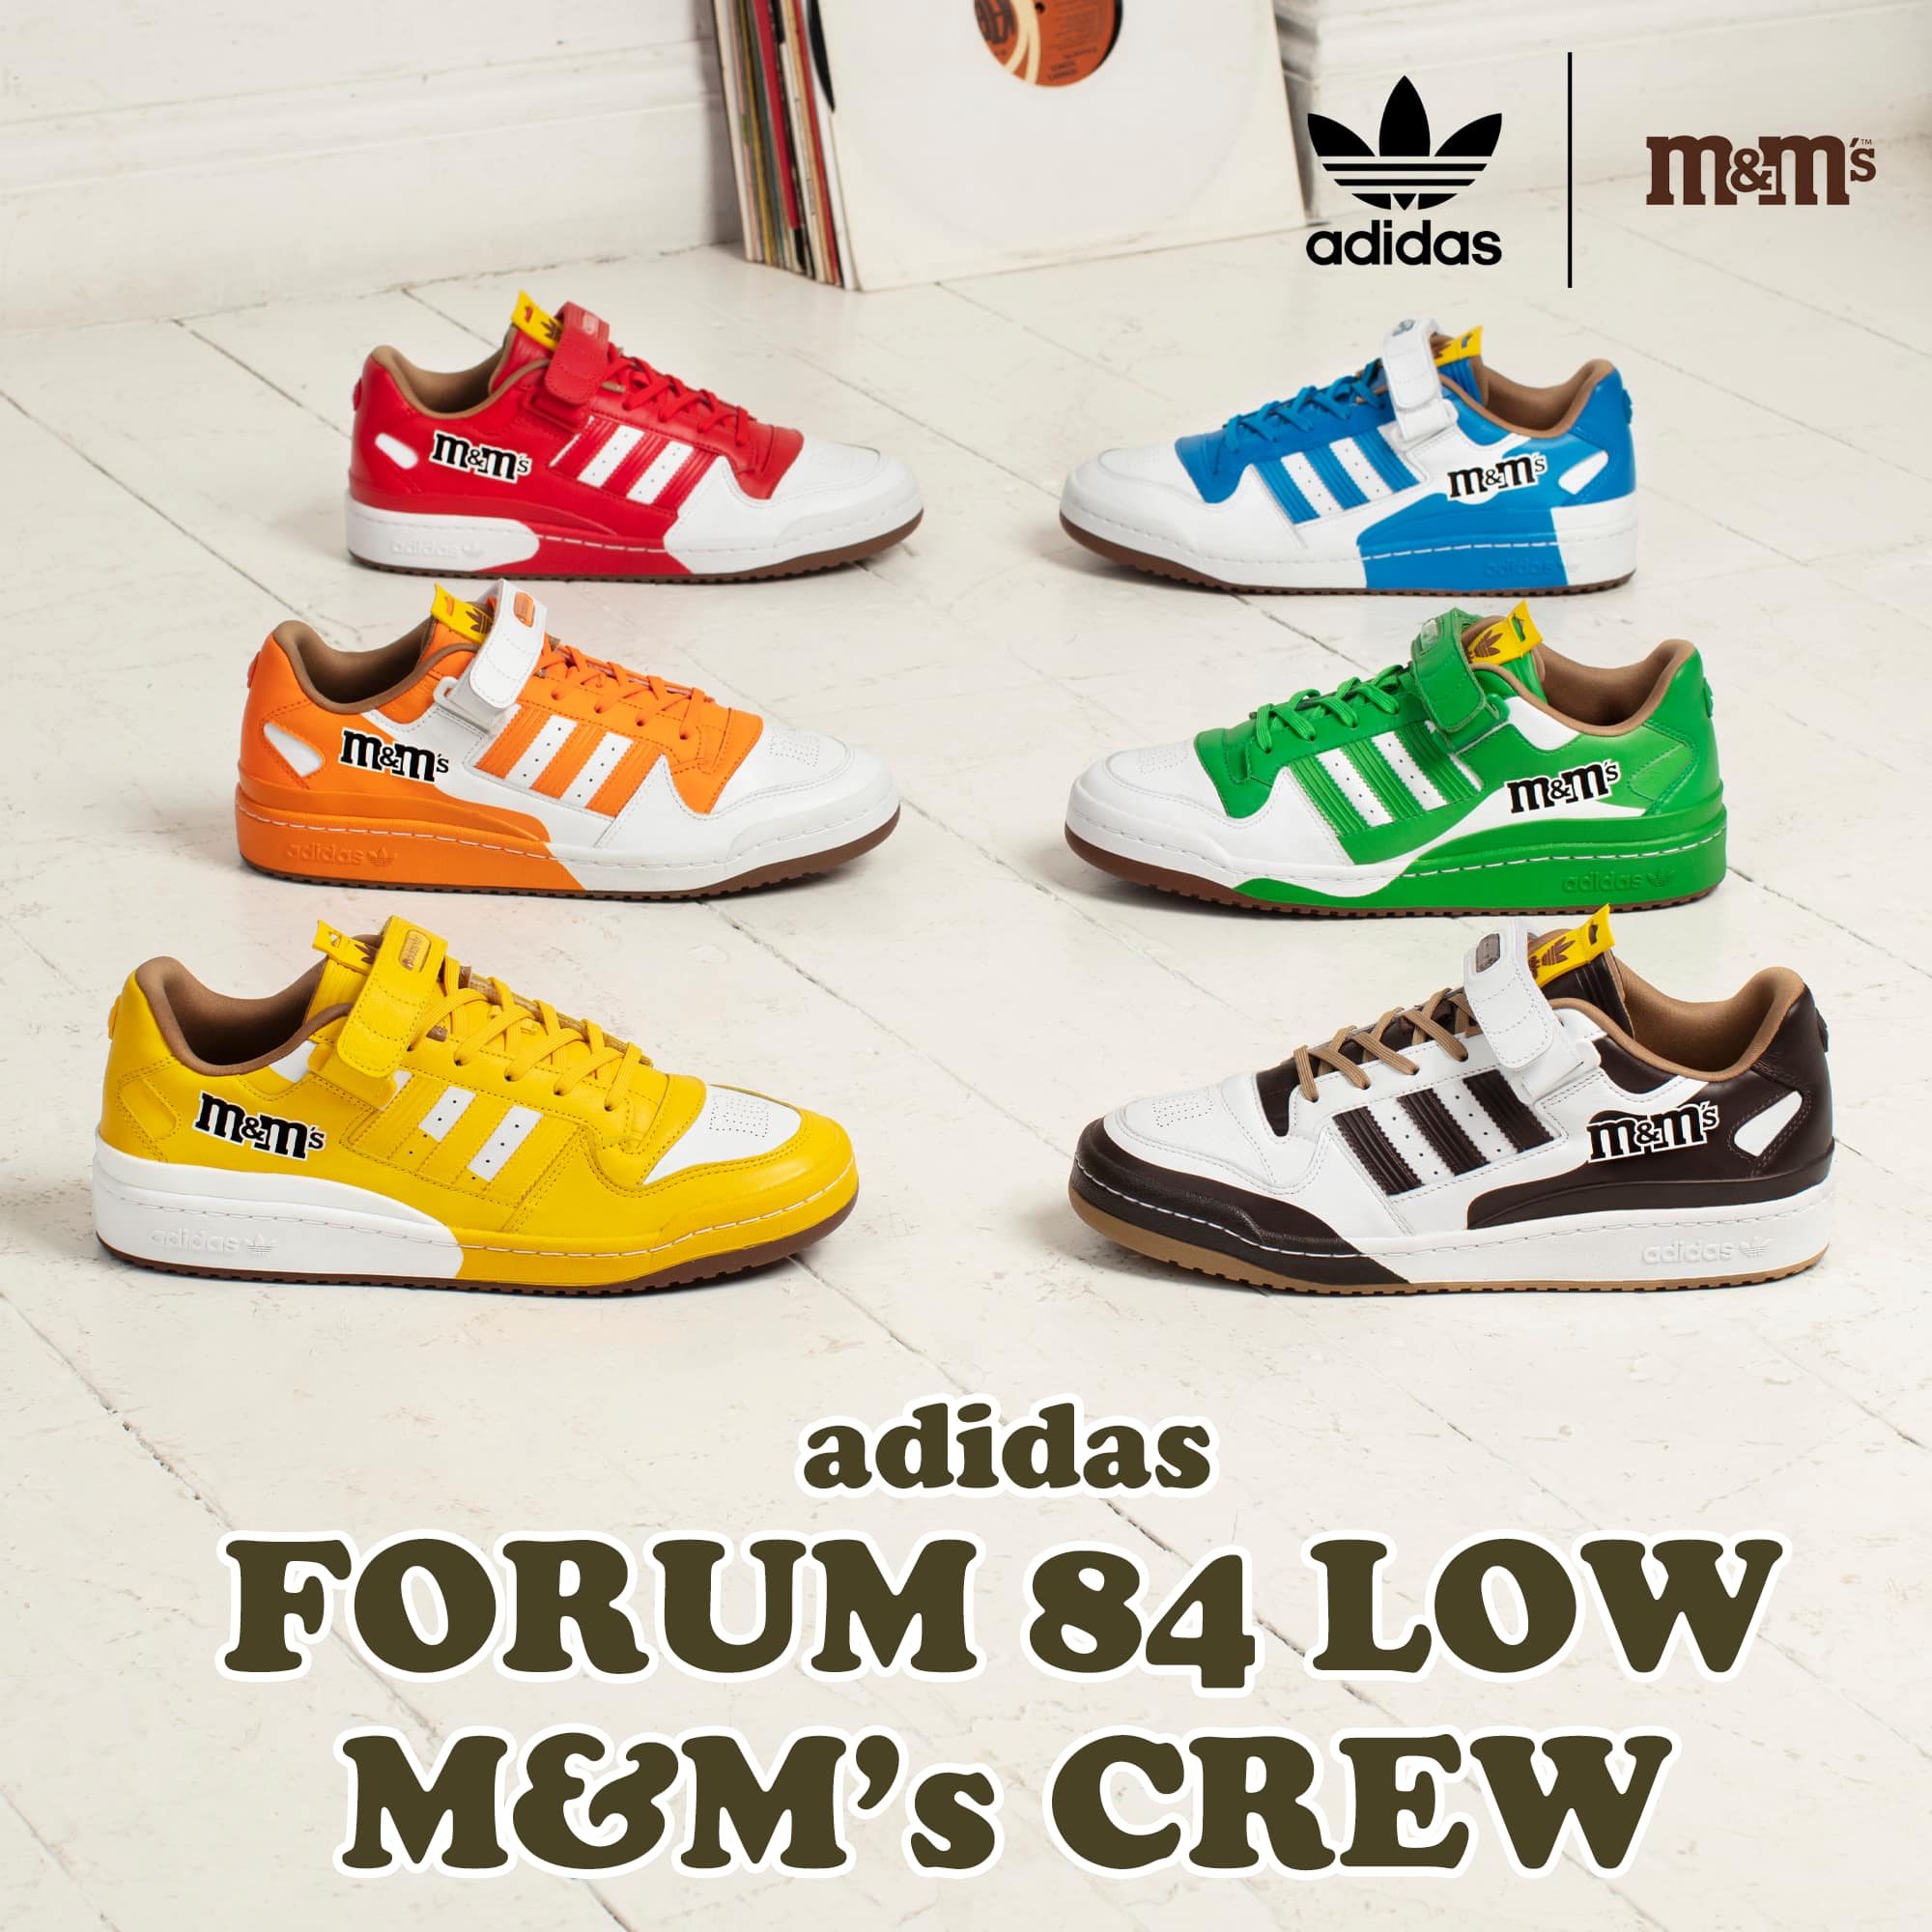 adidas FORUM 84 LOW M&M'S CREW